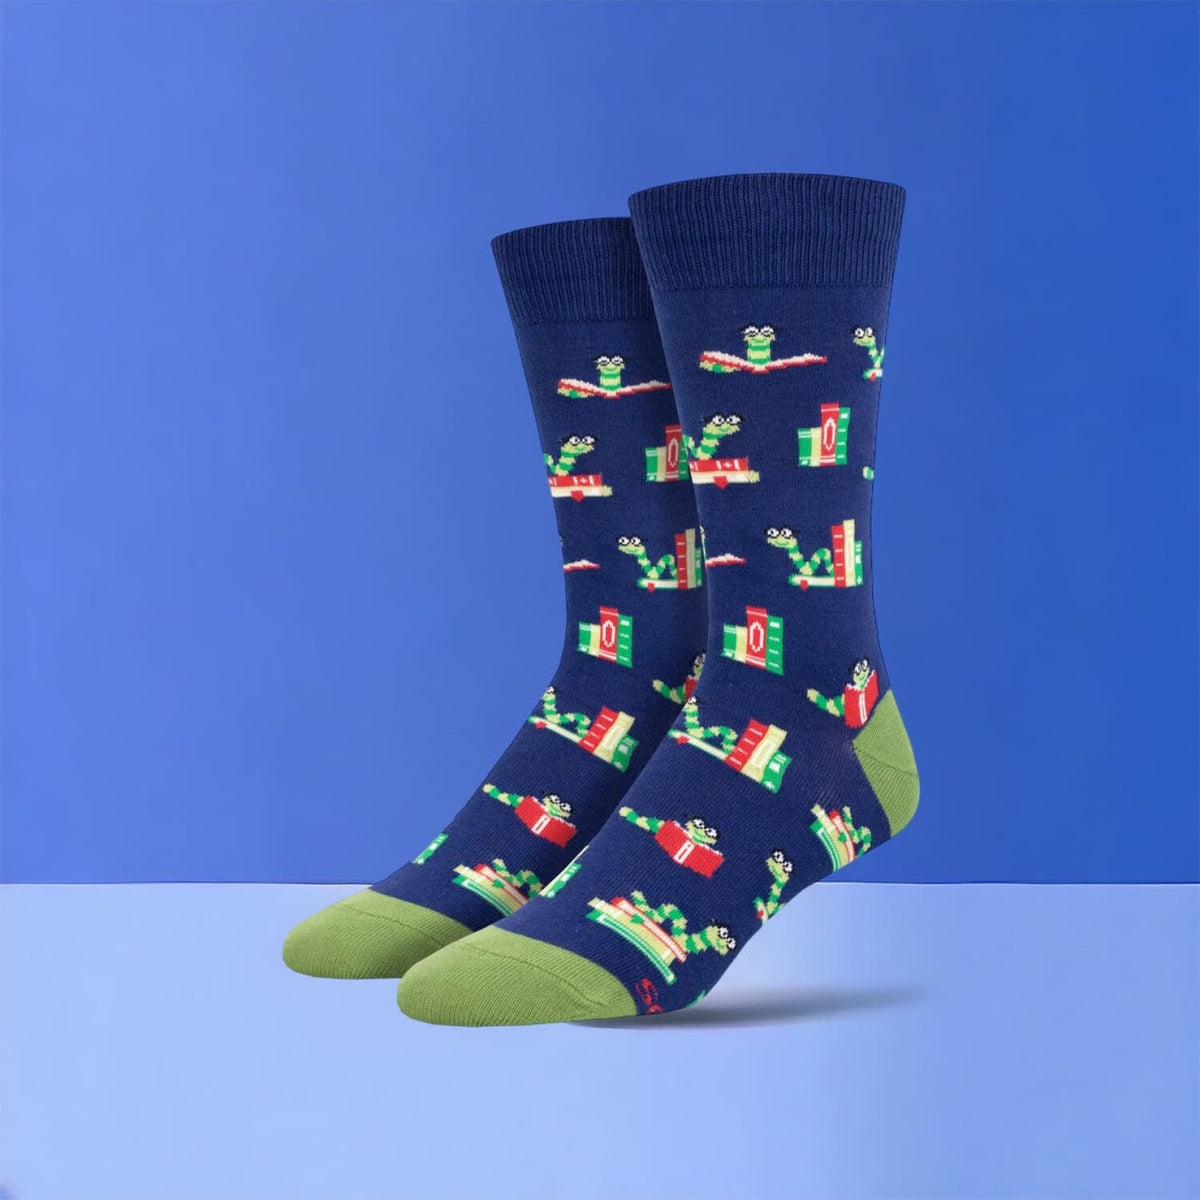 Bookworm Navy - Men’s Novelty Socks For Dad Gifts - Men